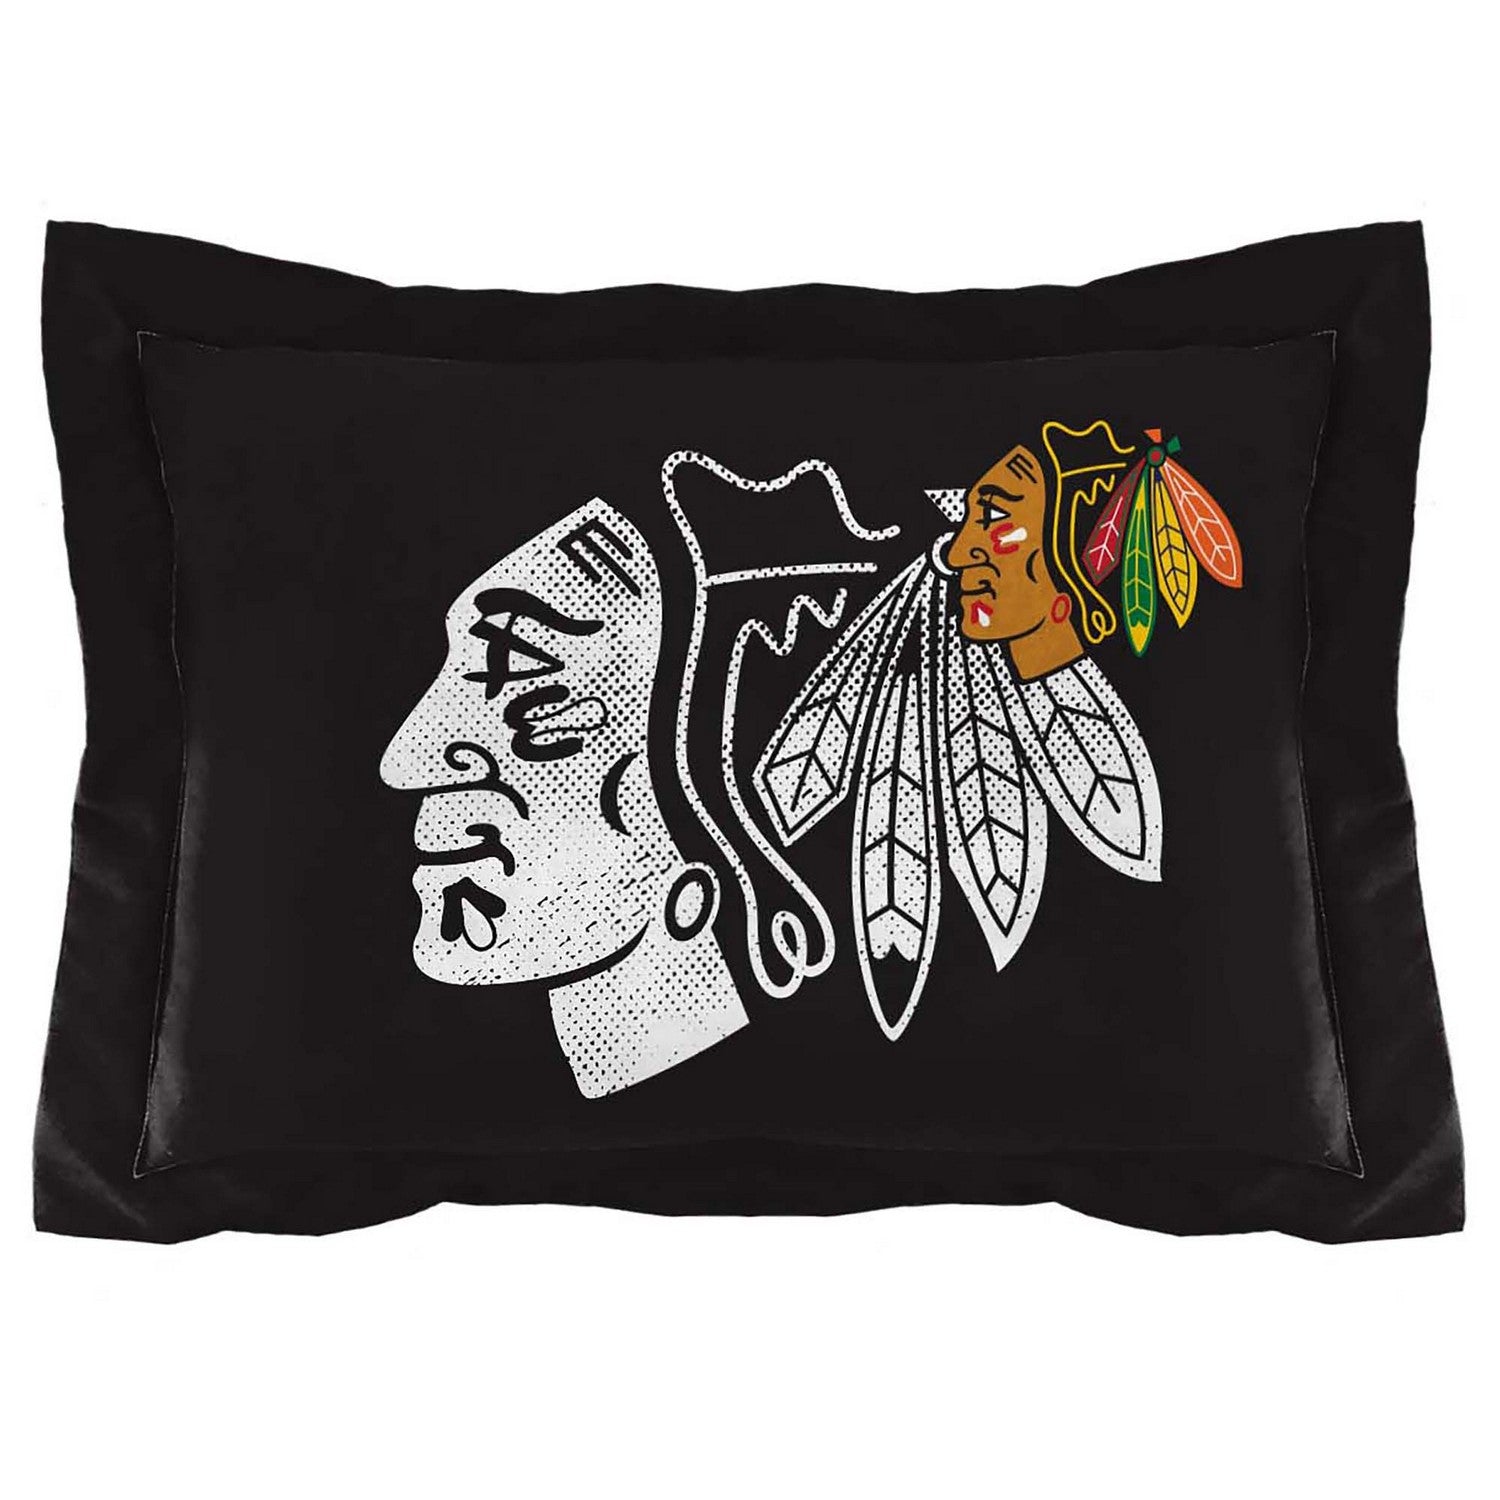 Chicago Blackhawks NHL Officially Licensed Comforter Set | Sweet